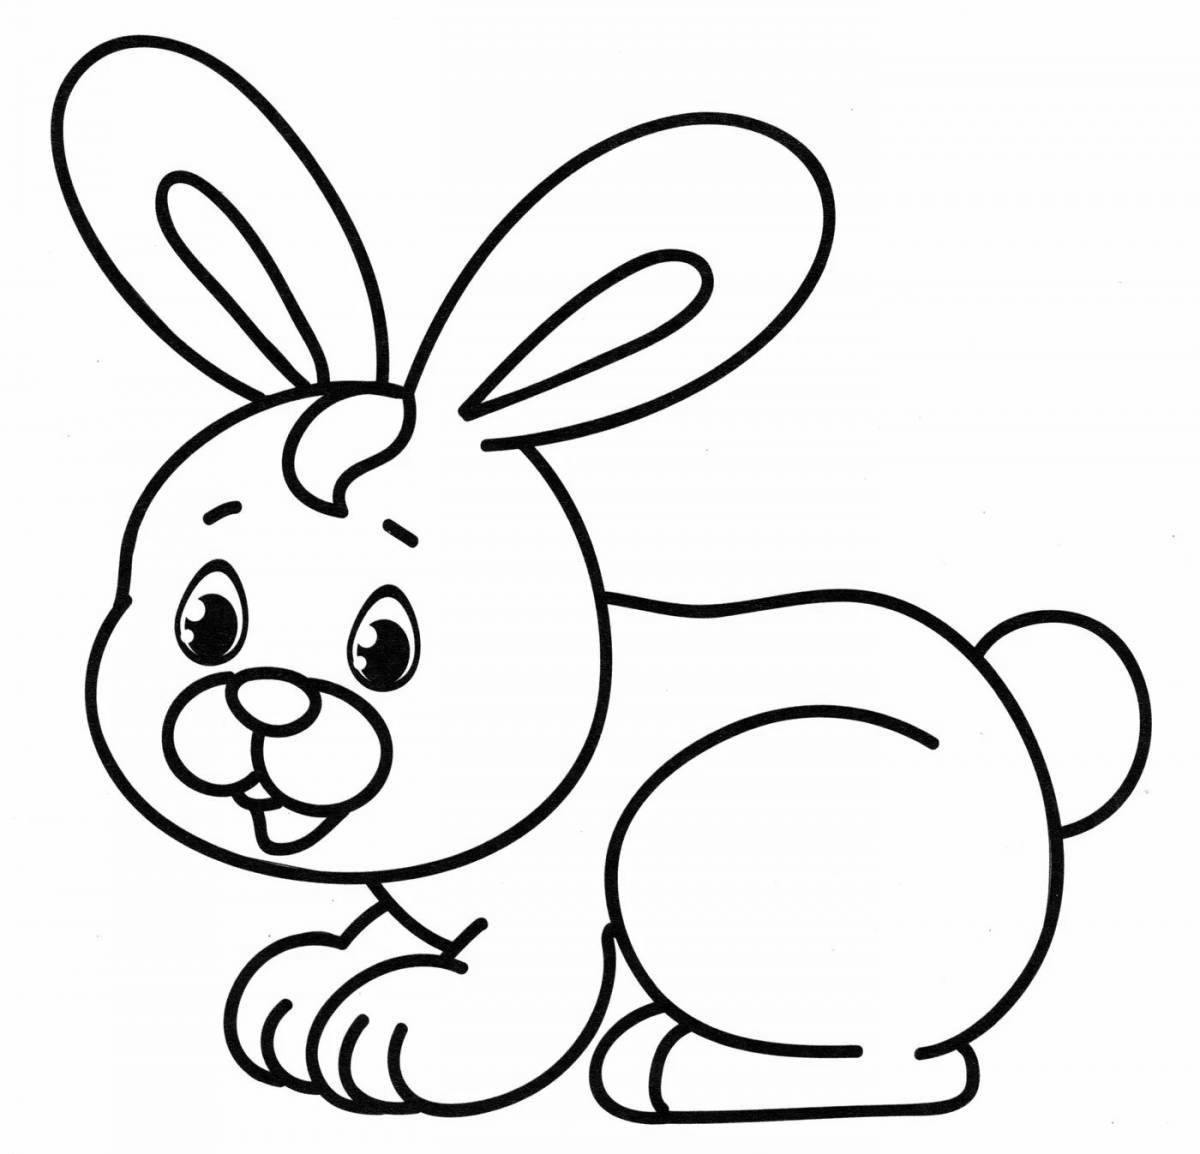 Fun coloring hare for pre-k